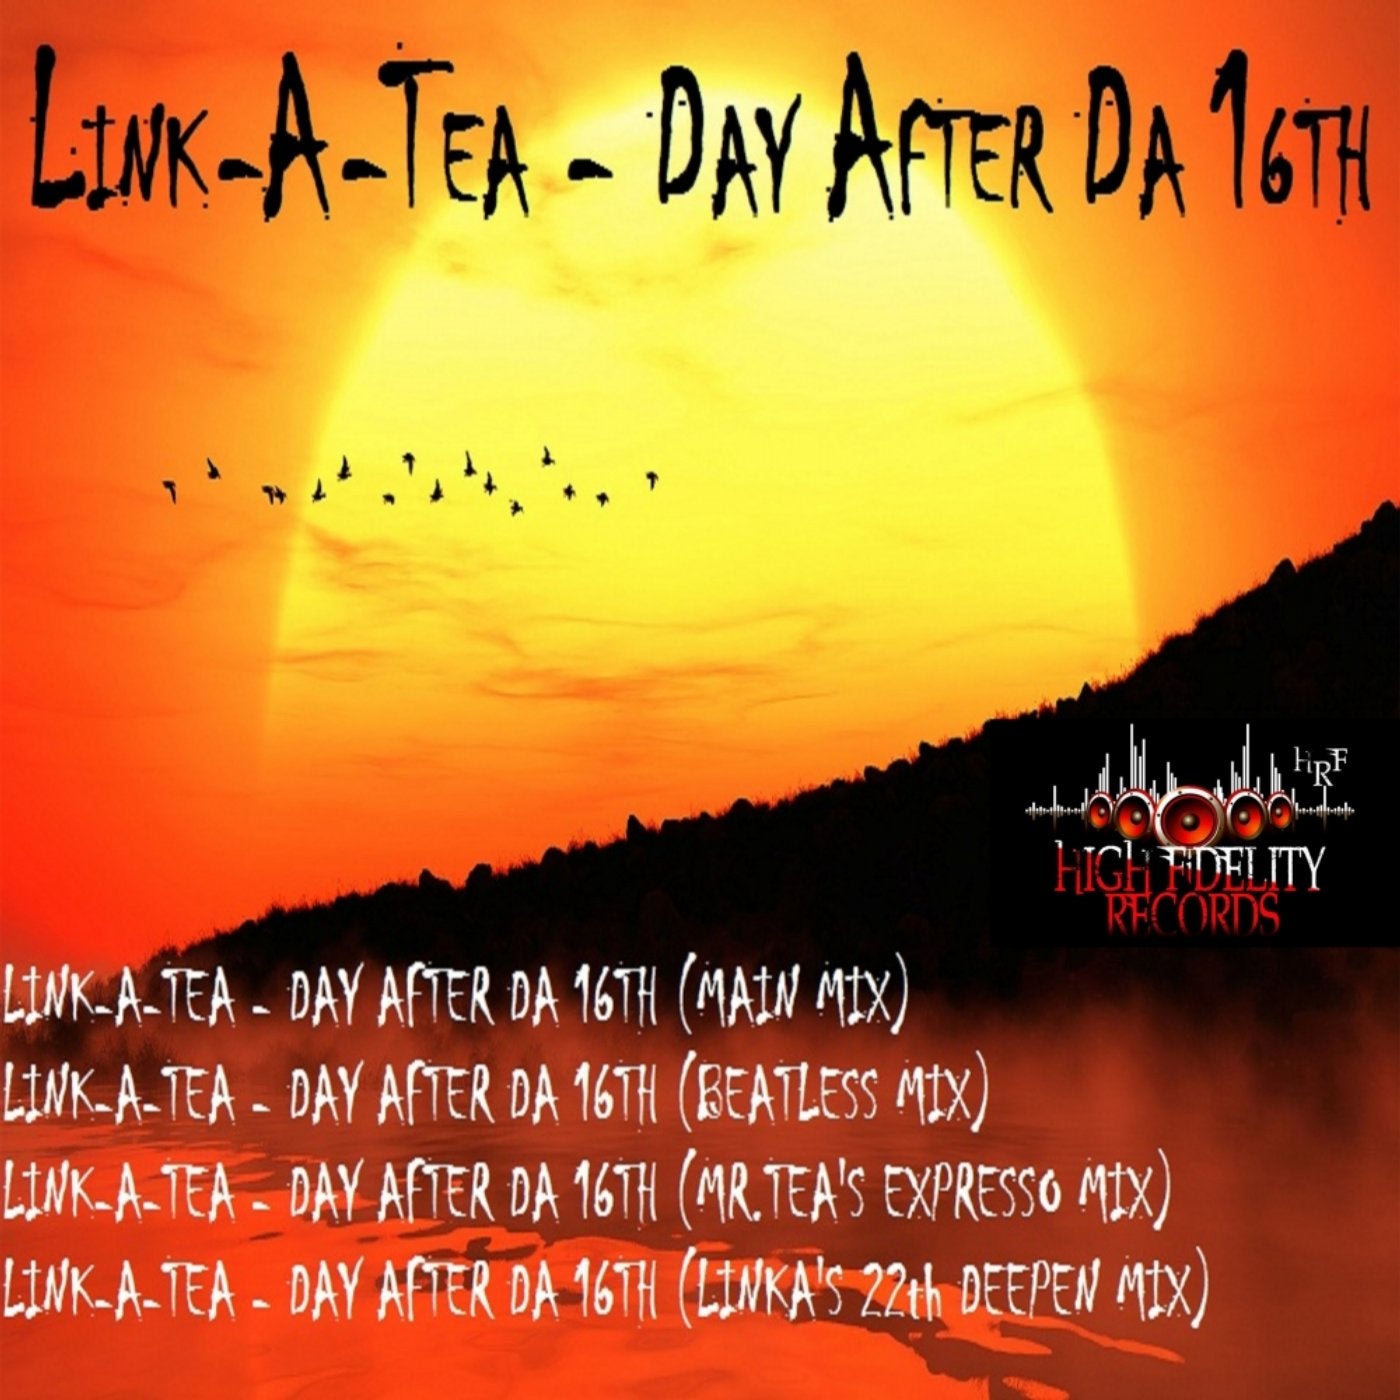 Day After Da 16th